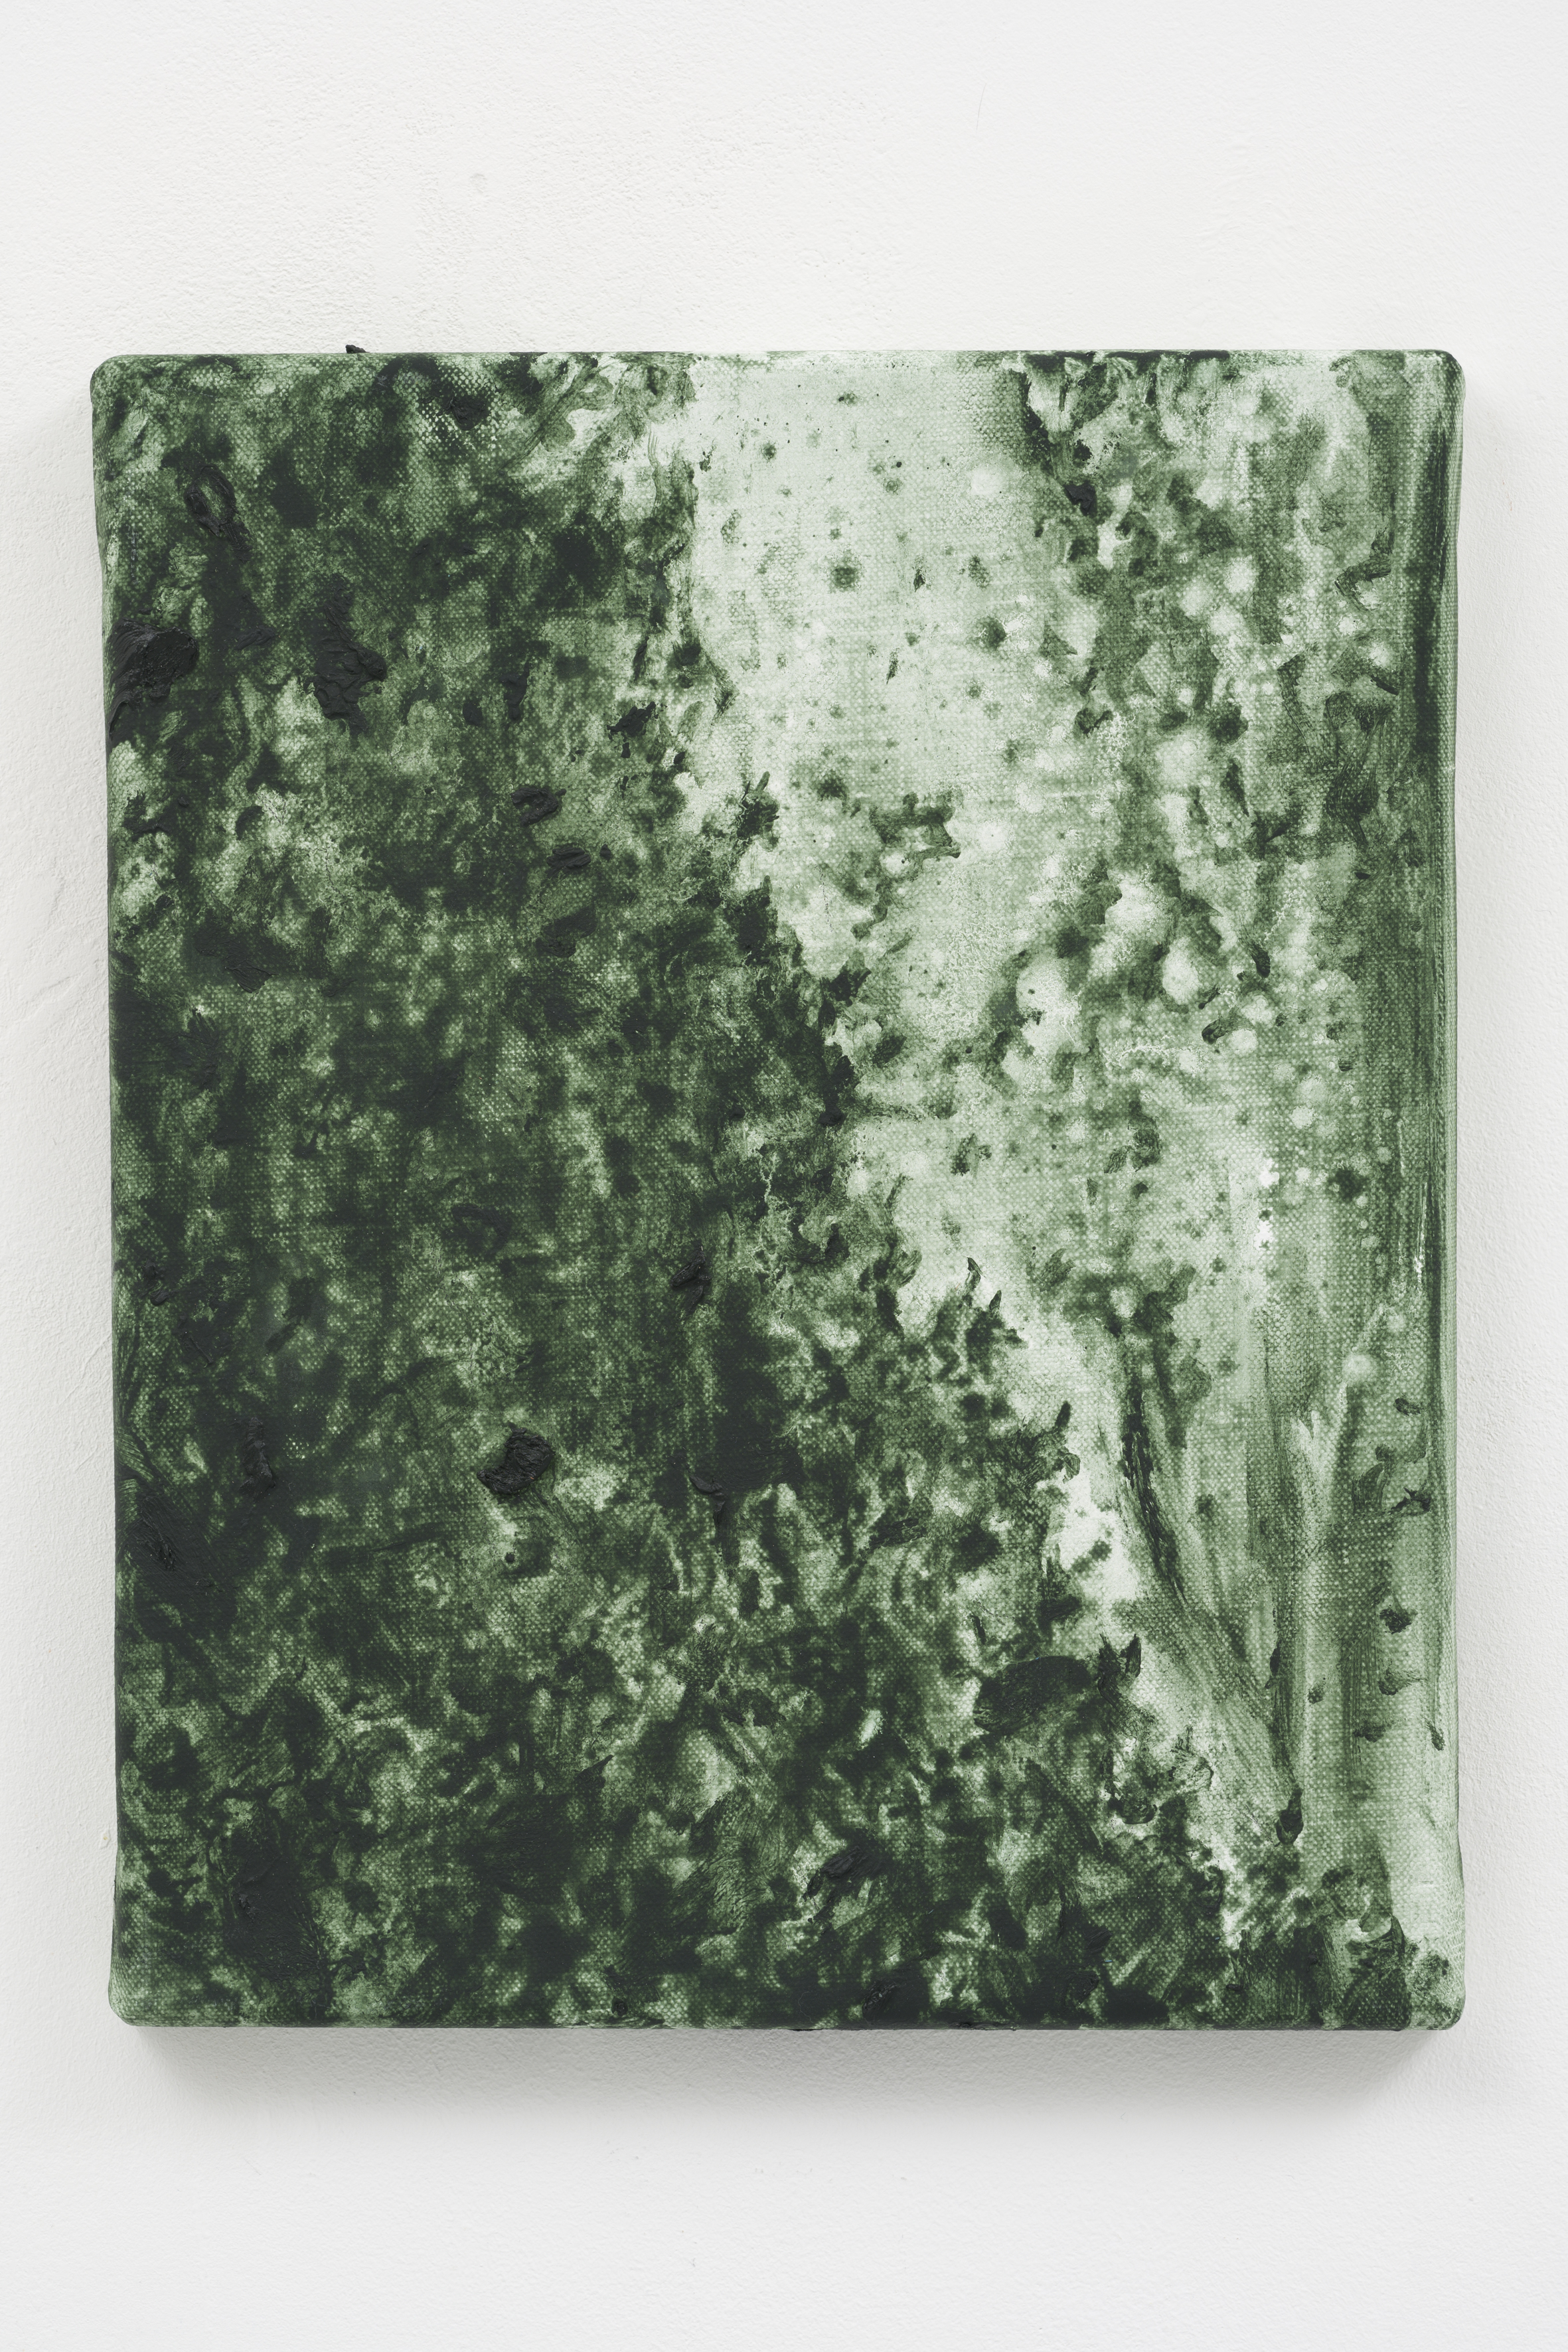 "Night Fog III",  30 x 24 cm., oil on linen 2020